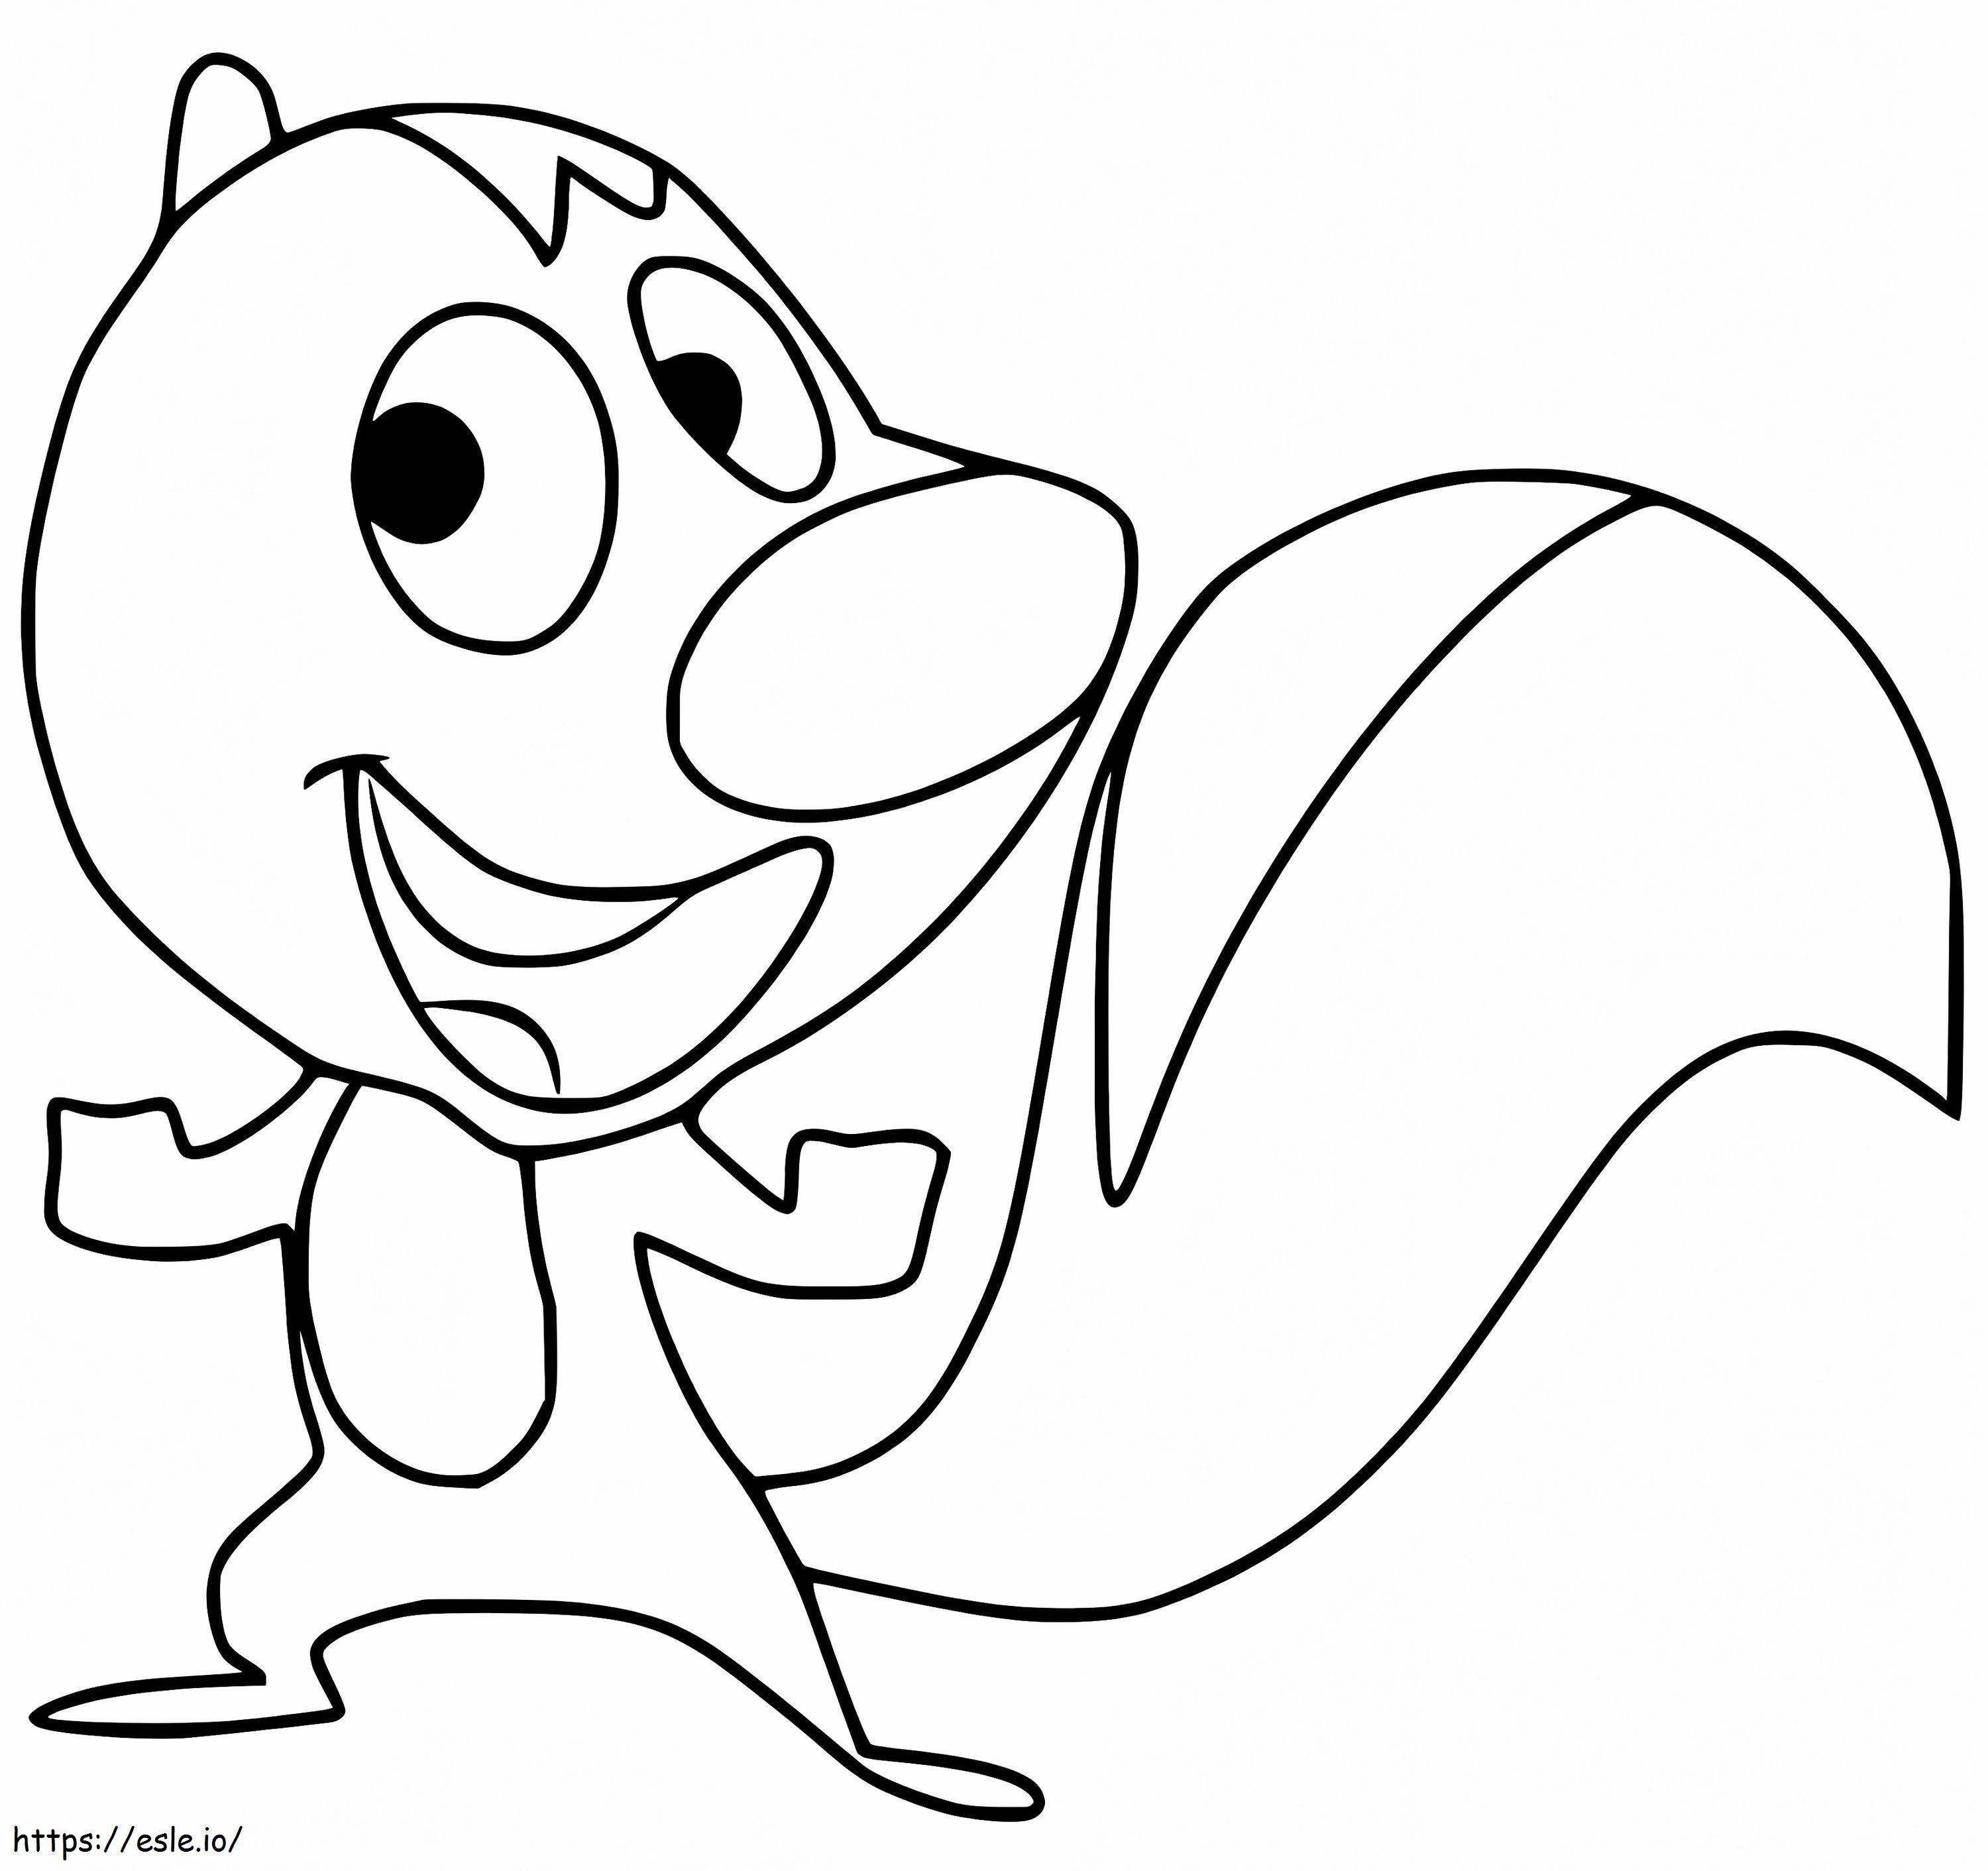 Happy Skunk coloring page